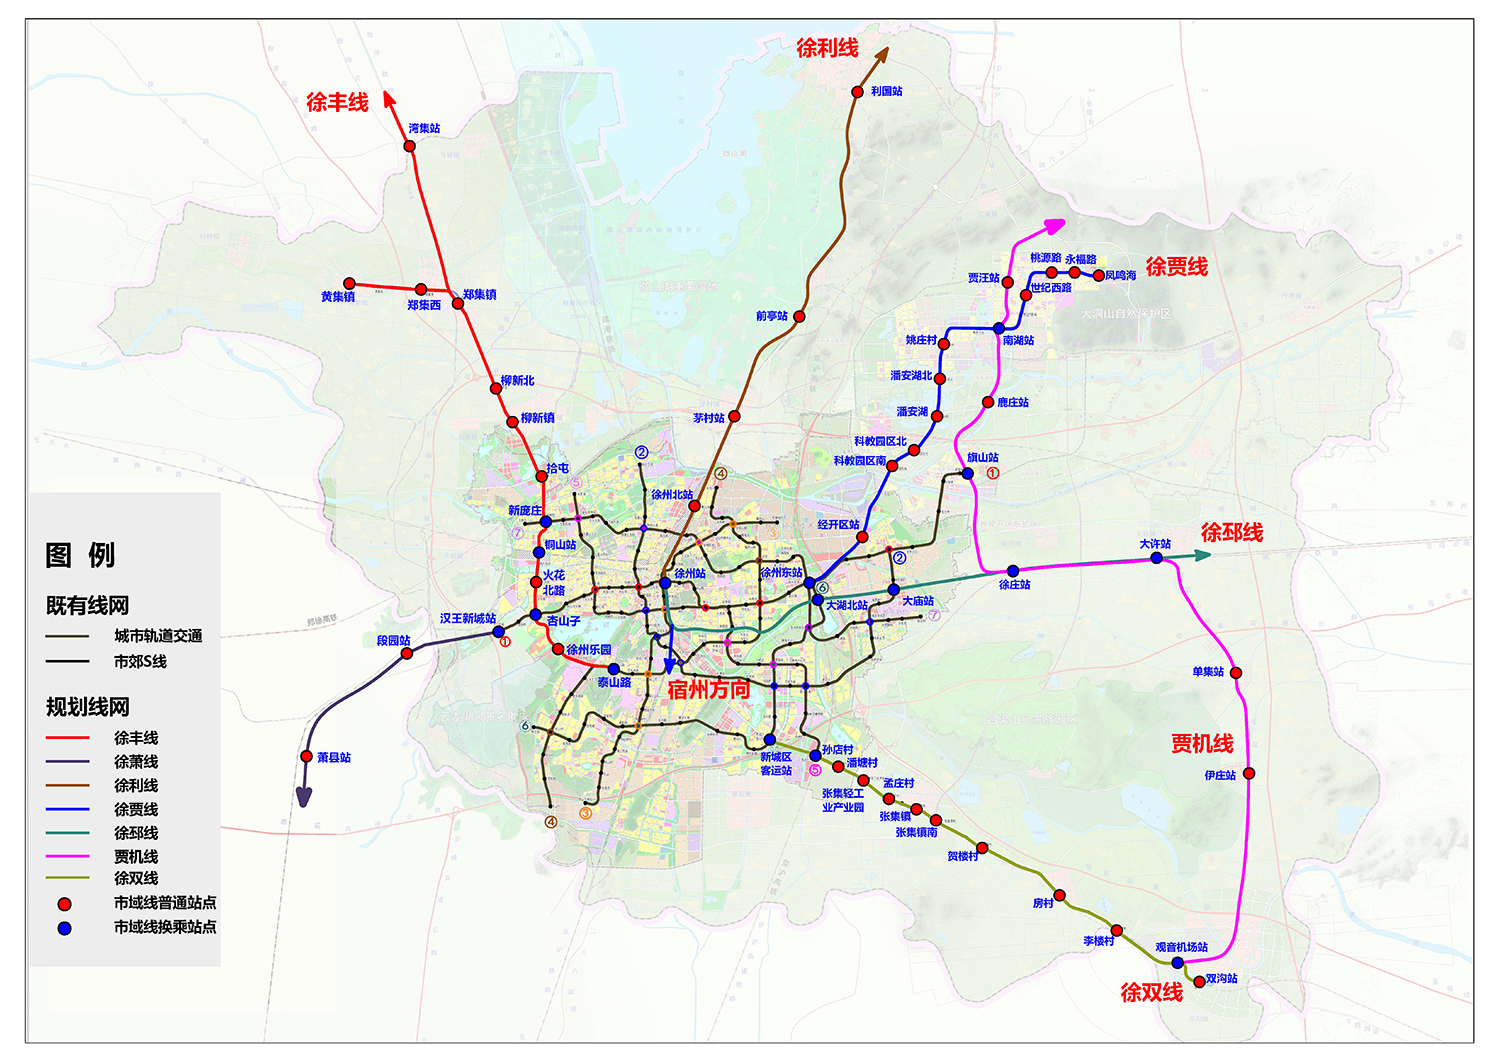 徐州市域郊铁路线网规划客流预测